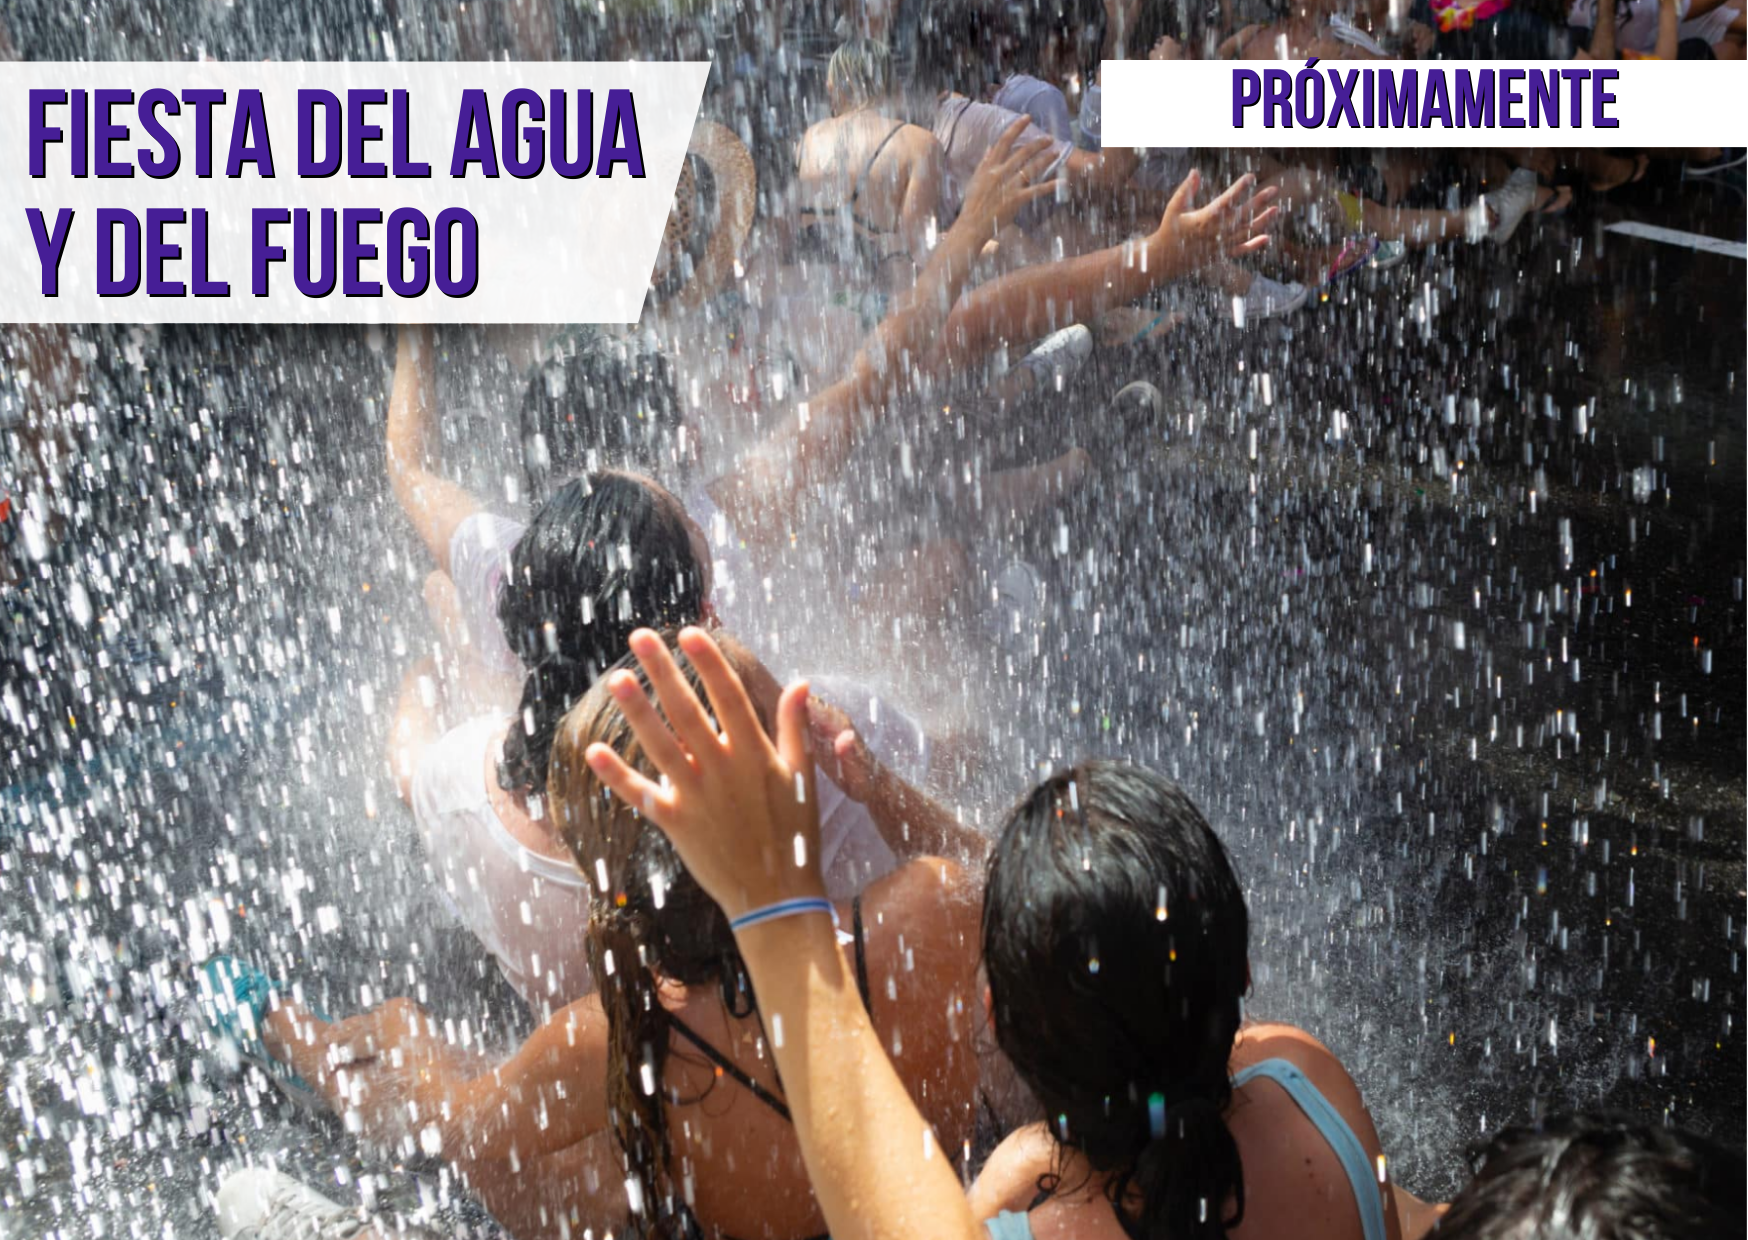 Fiesta del Agua y del Fuego | Coming soon